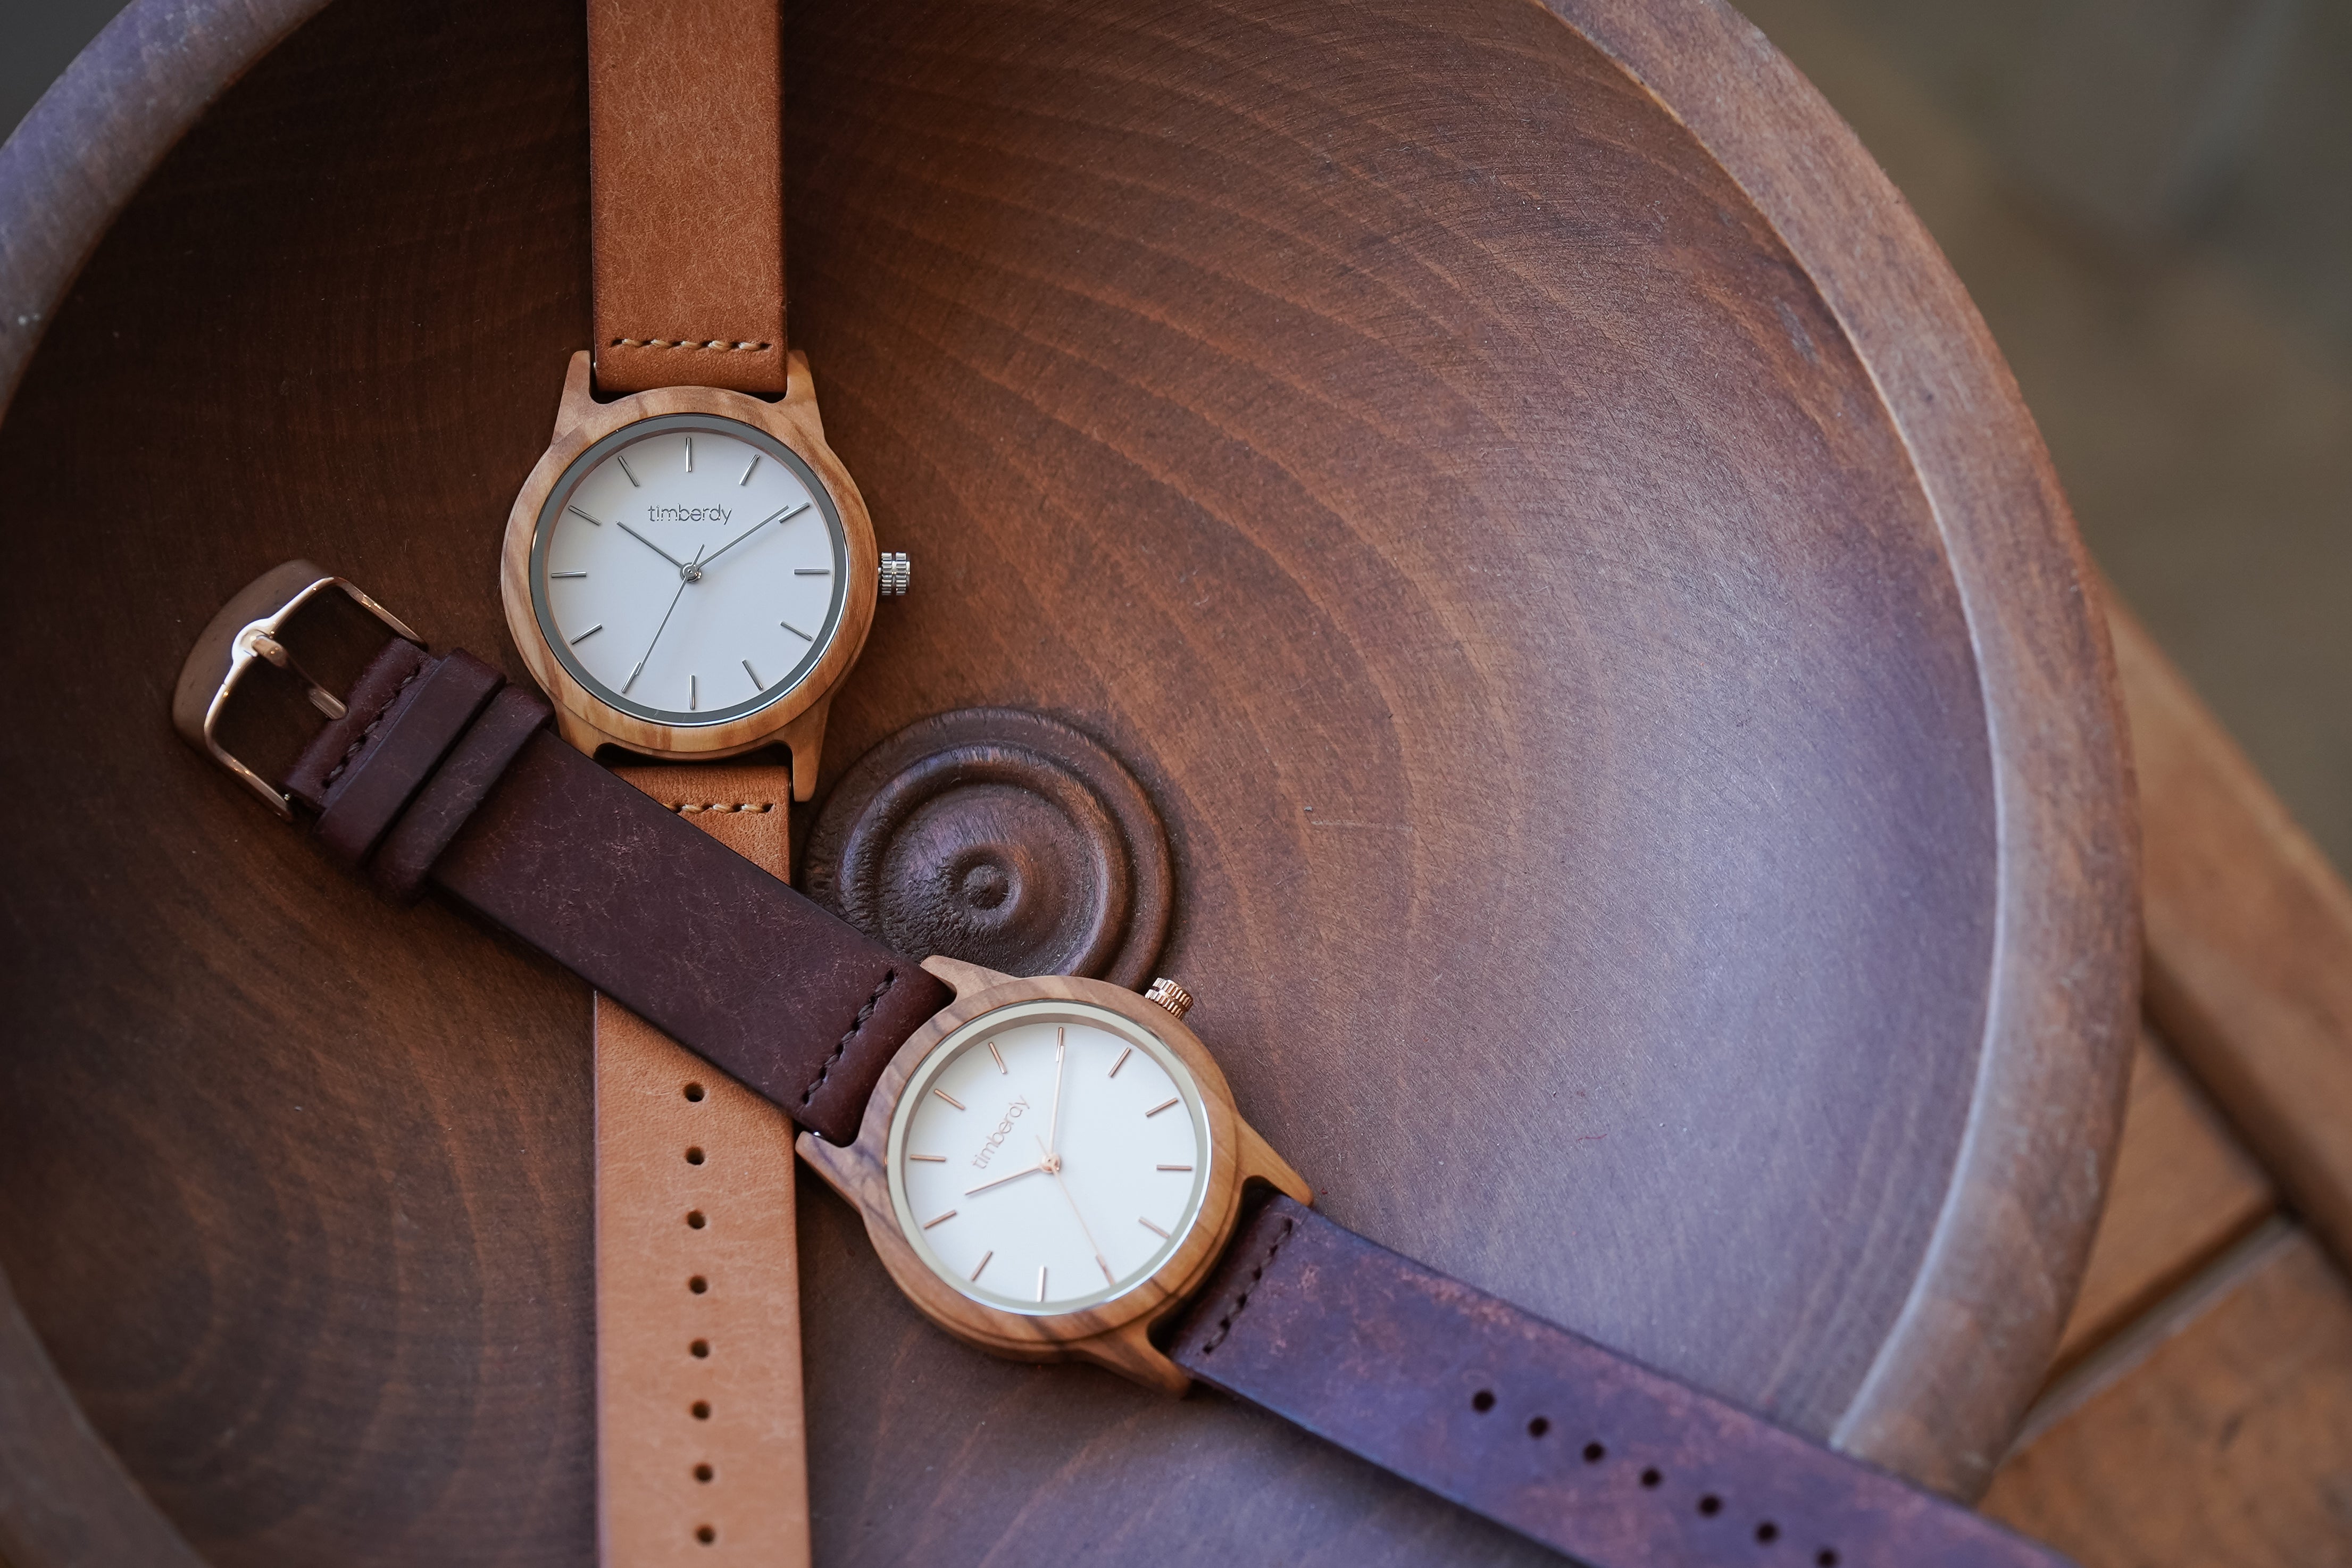 世界に1つだけの腕時計 – timberdy